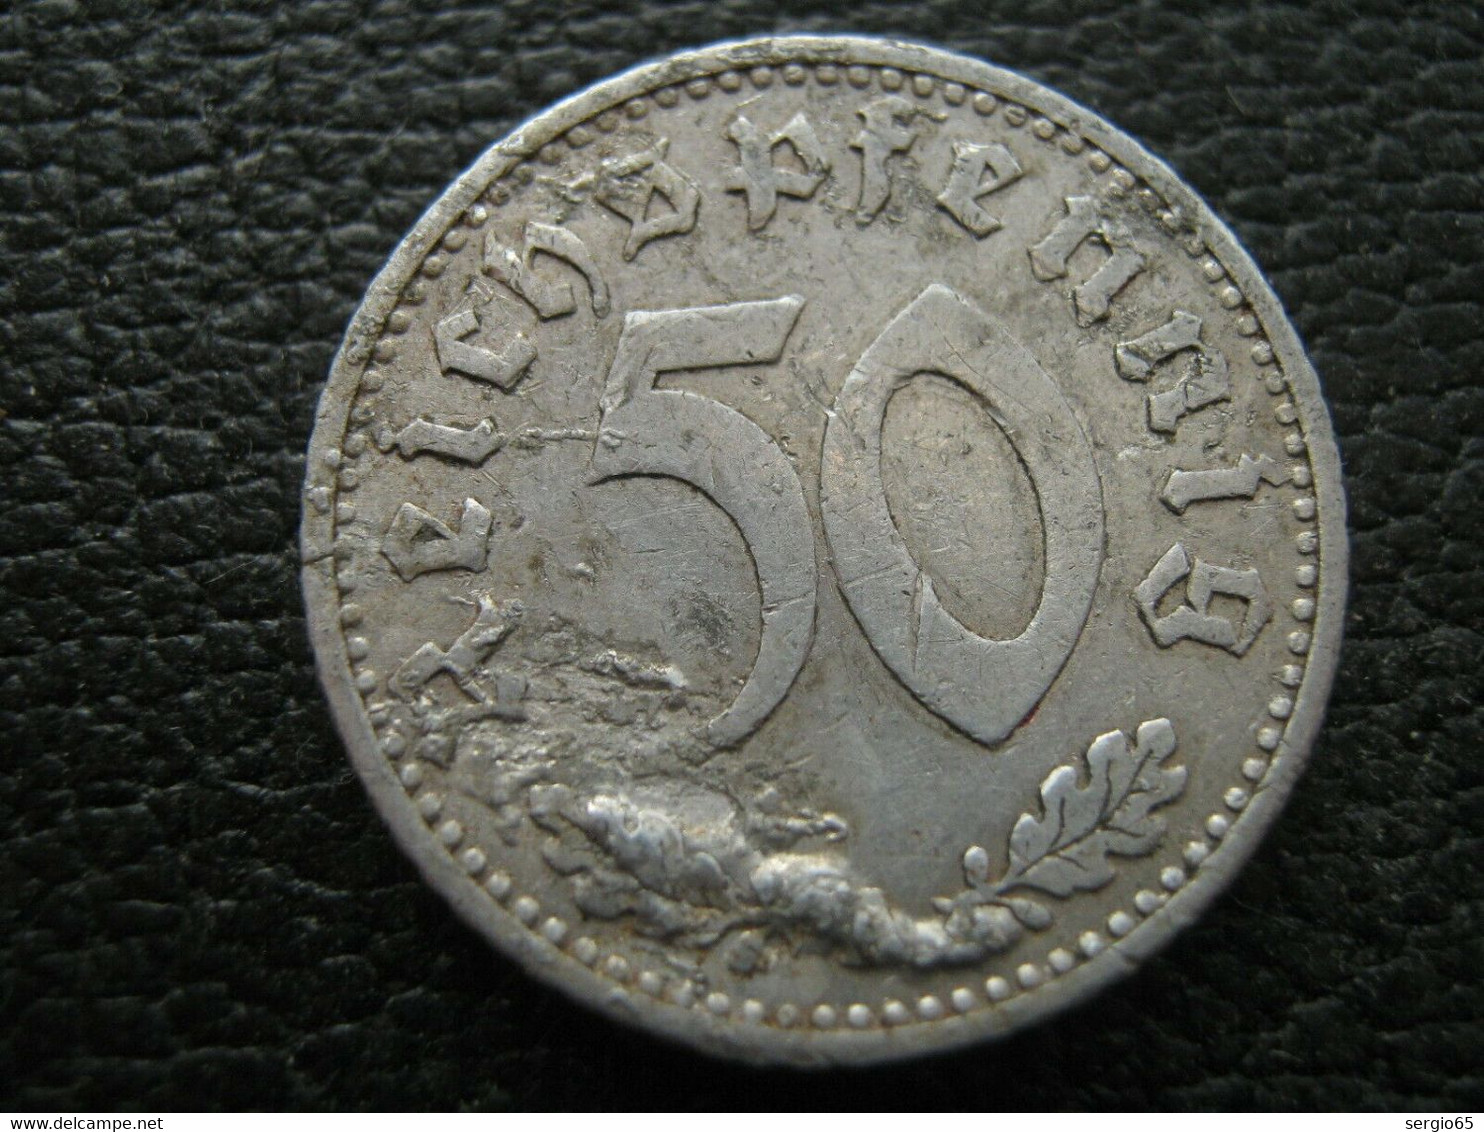 5 Pf 1935-error - 50 Reichspfennig